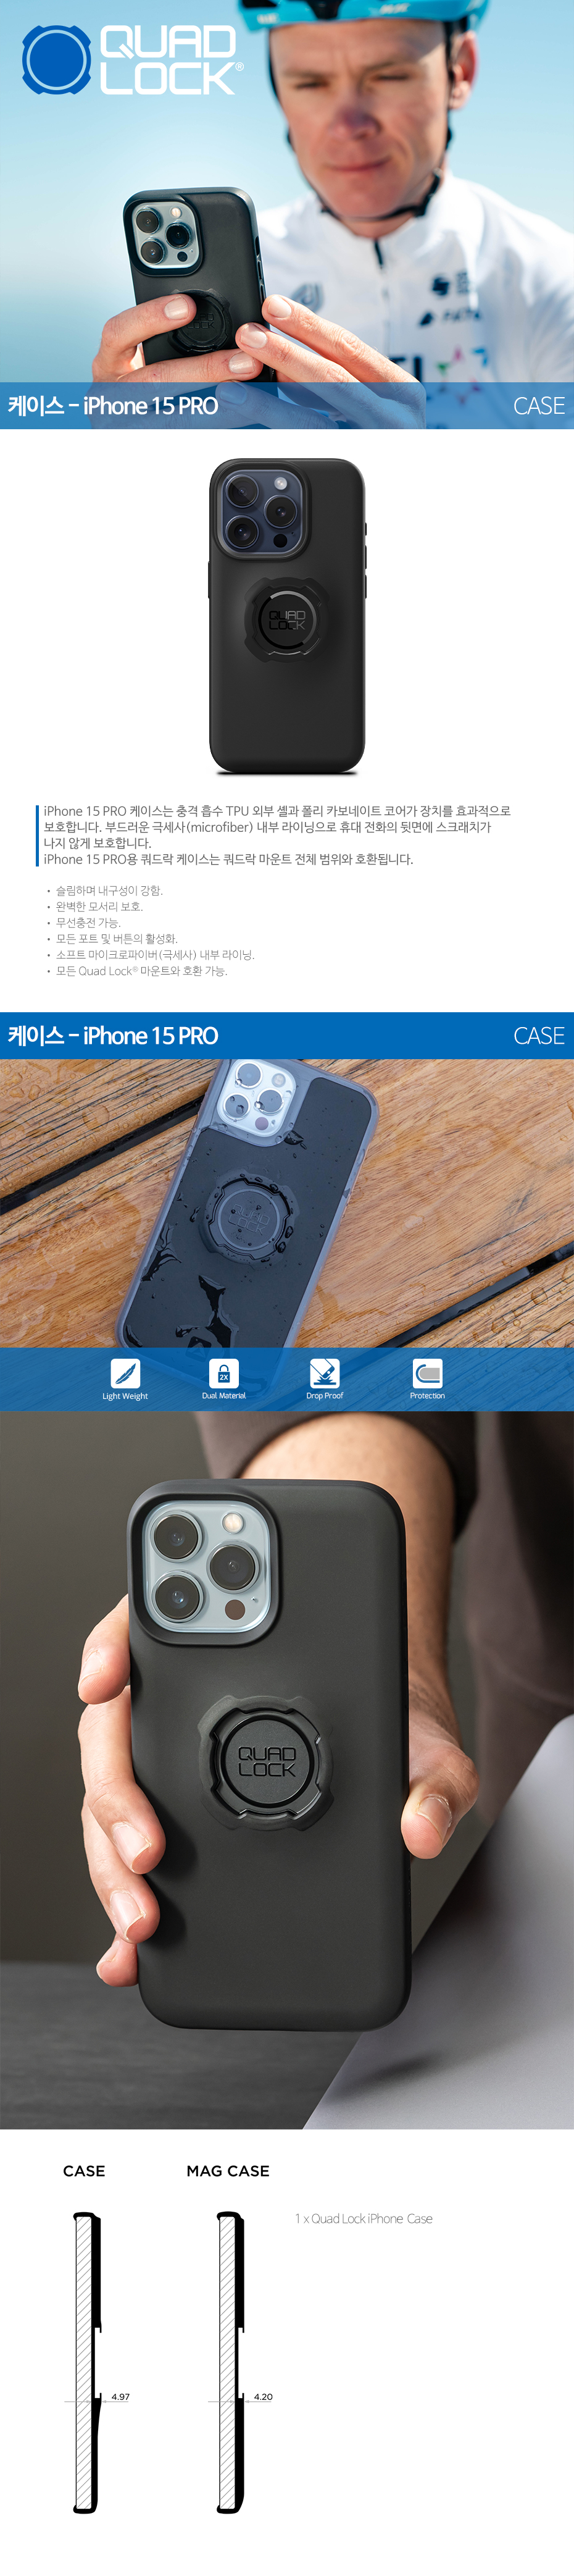 Quadlock SmartPhone Case for iPhone 15 Pro